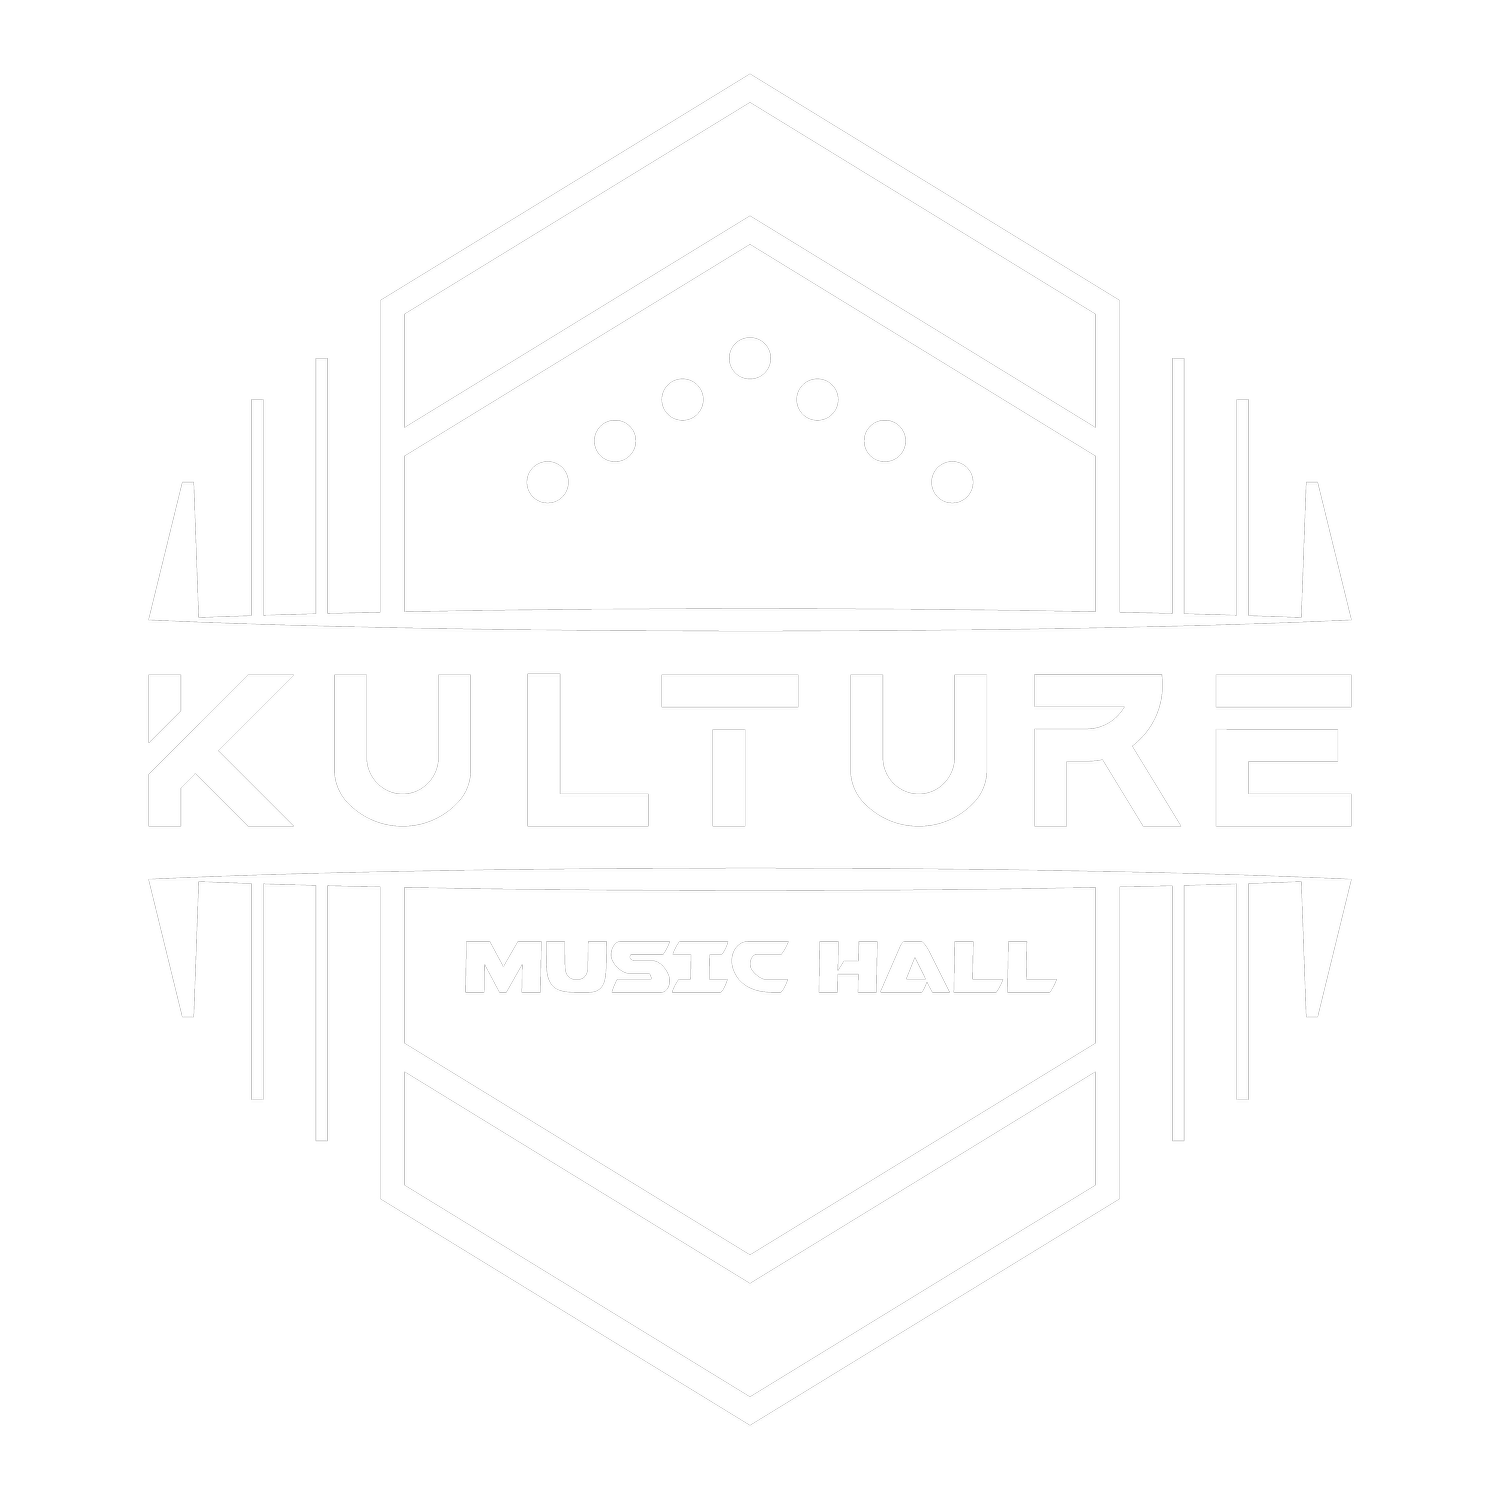 Kulture Music Hall